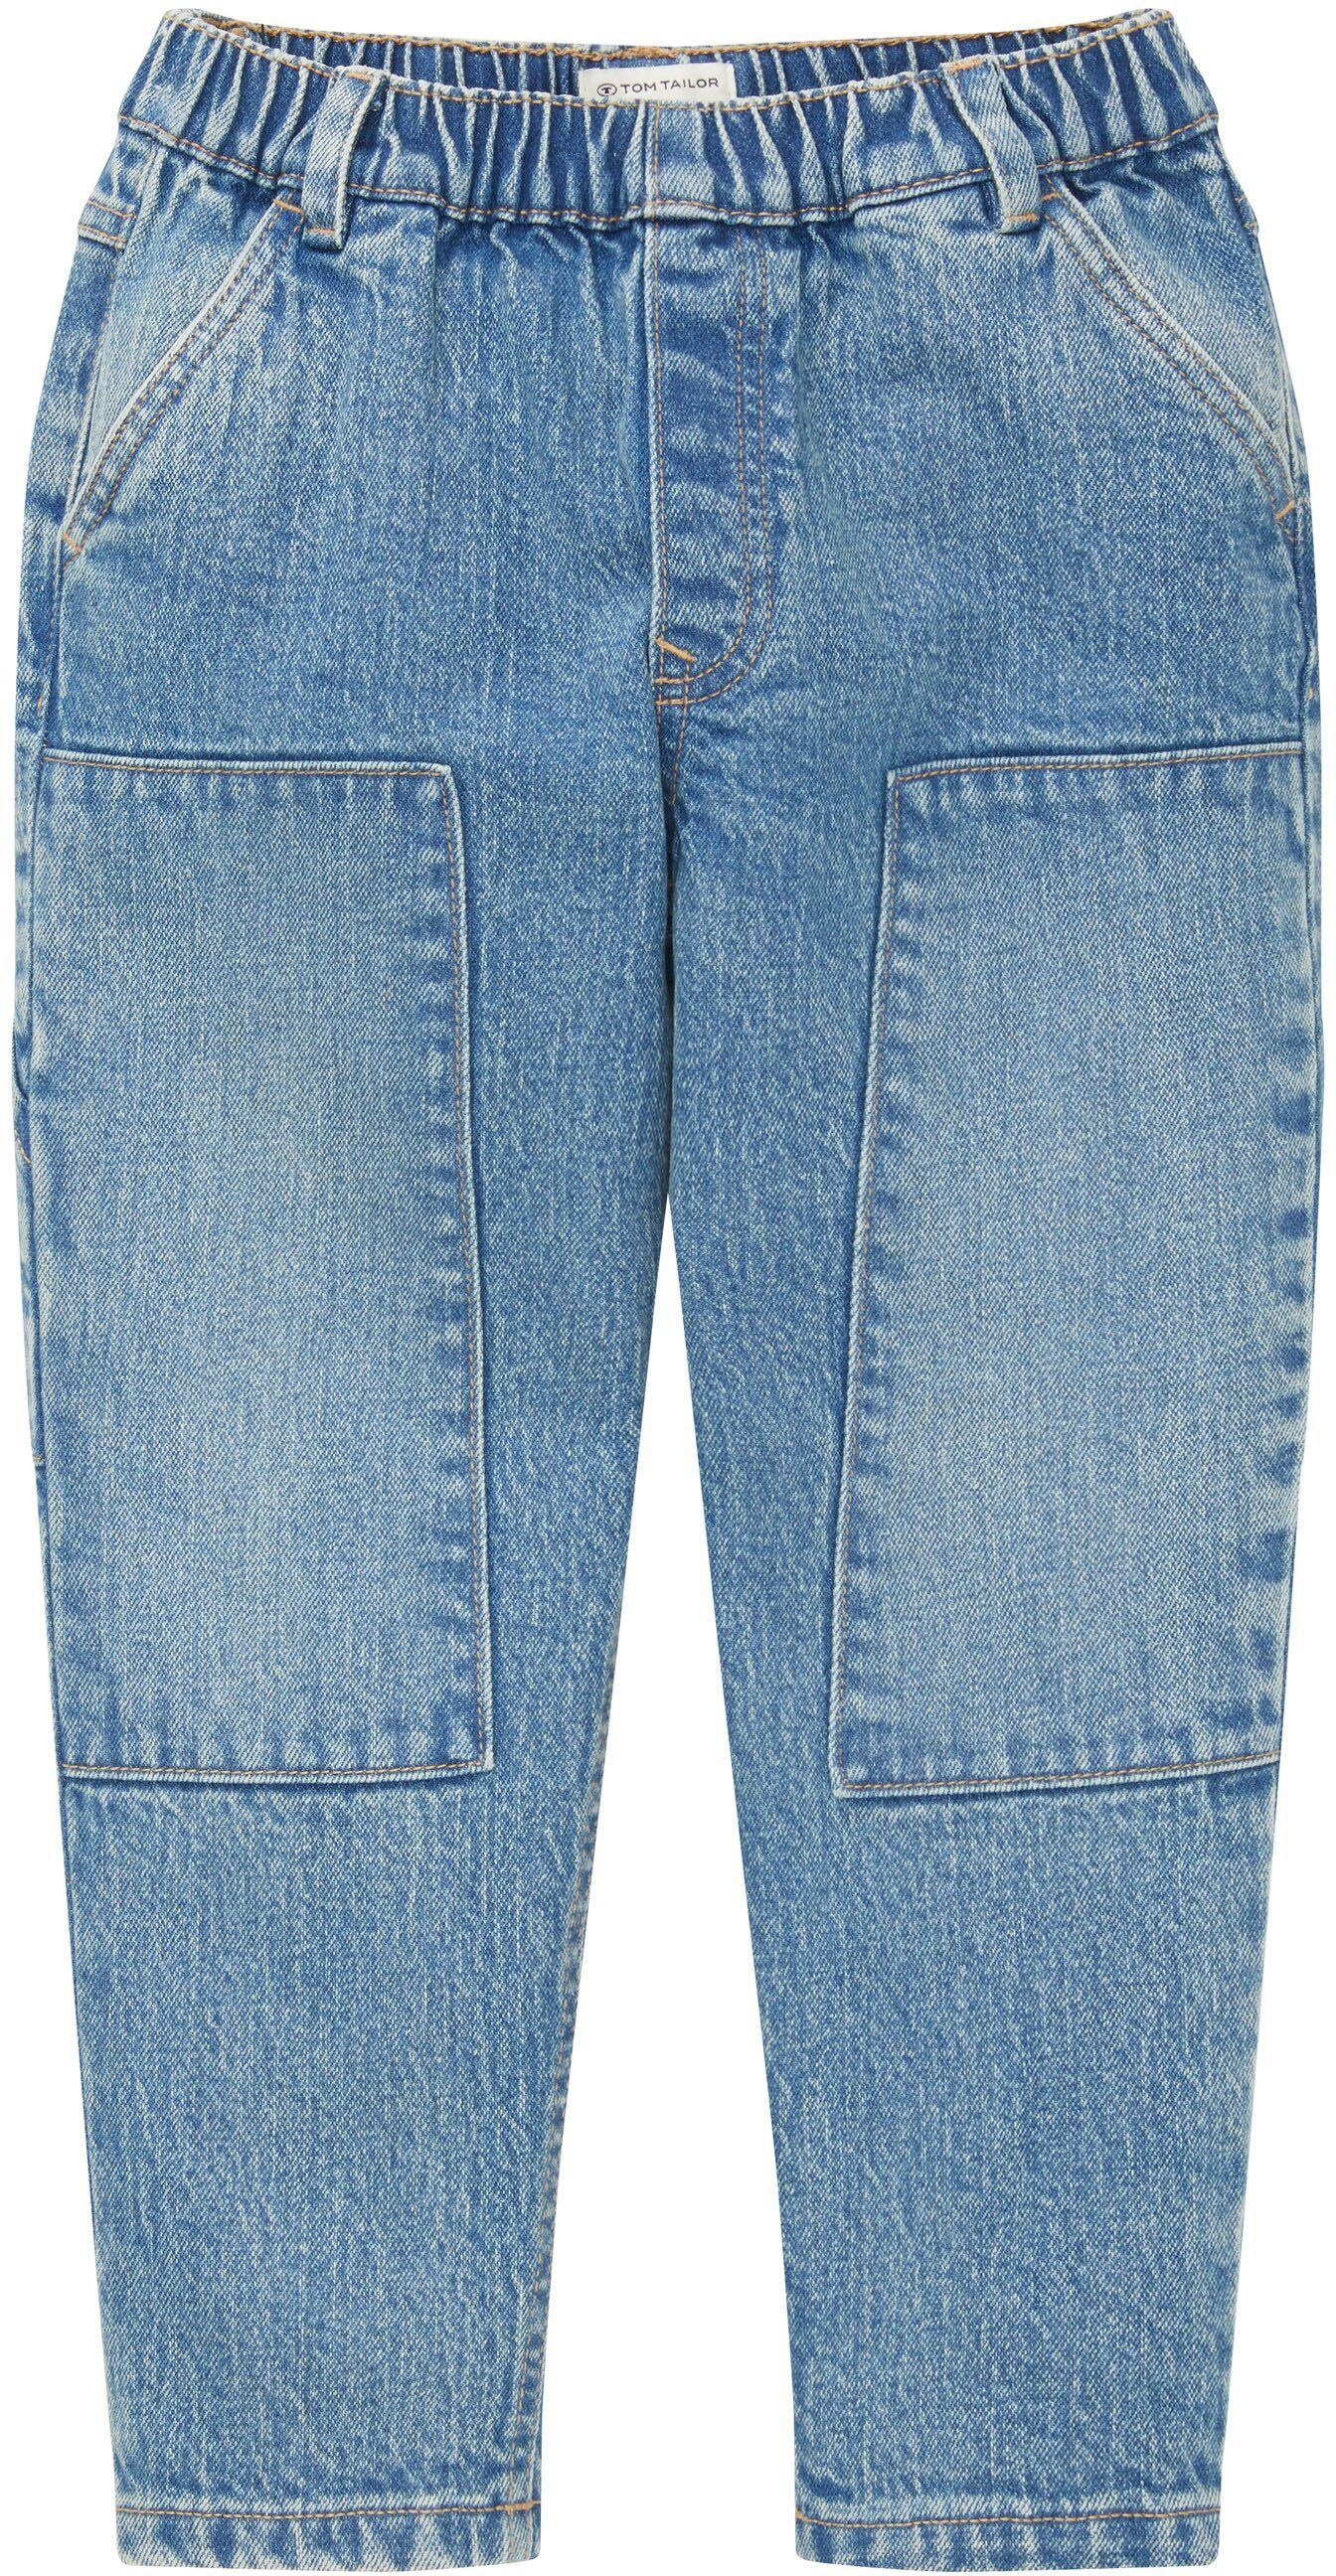 Relax-fit-Jeans TAILOR weitem Bund, Bequem Gummibund TOM elastischem Schnitt mit und dank